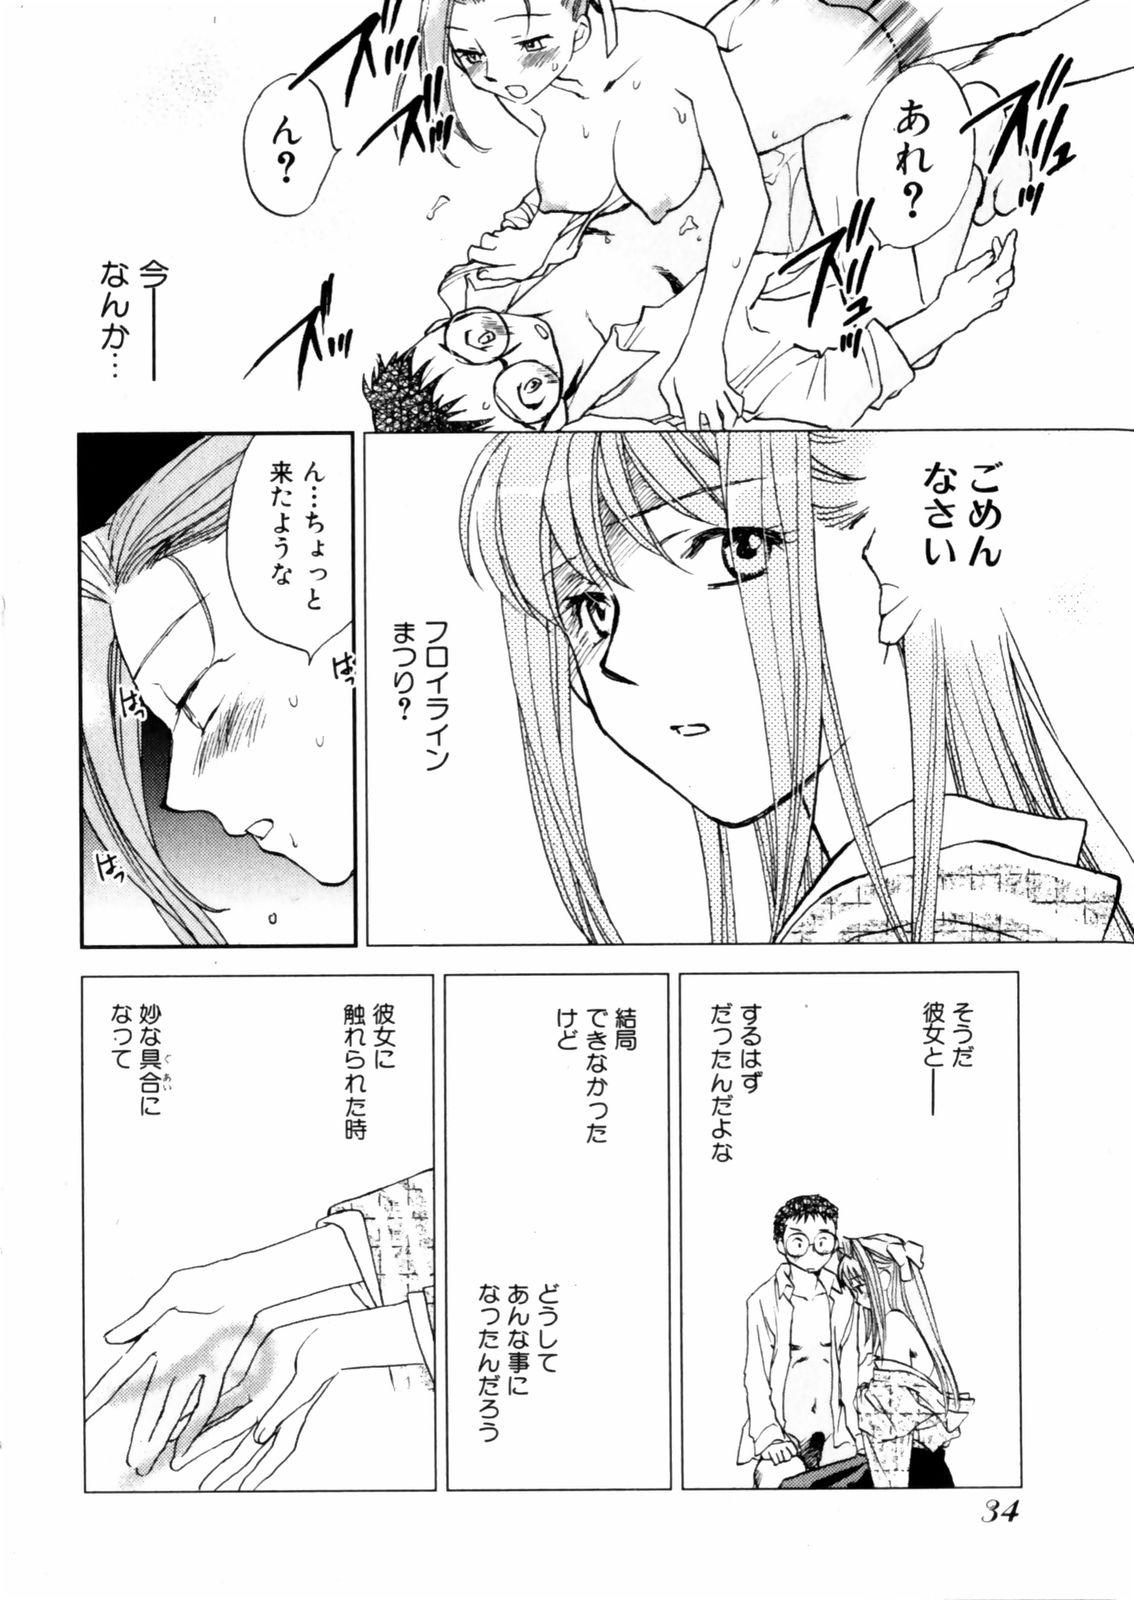 [Okano Ahiru] Hanasake ! Otome Juku (Otome Private Tutoring School) Vol.2 35